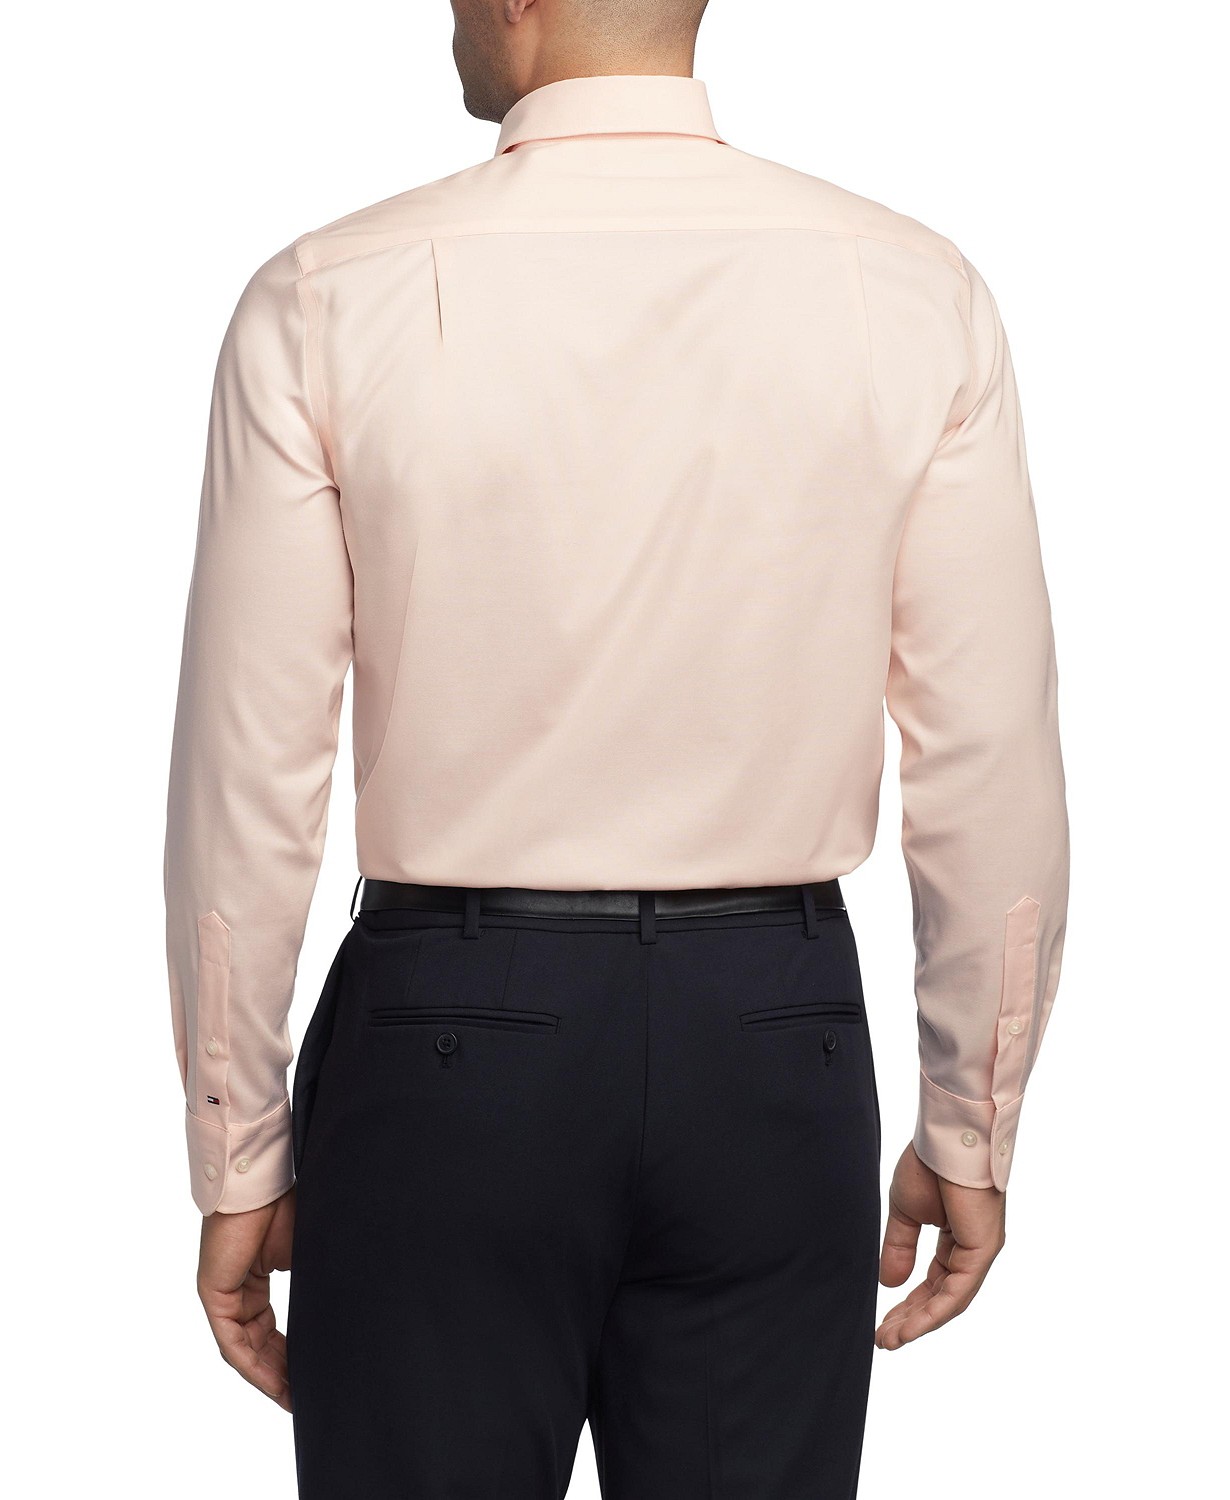 타미힐피거 Mens TH Flex Regular Fit Wrinkle Resistant Stretch Pinpoint Oxford Dress Shirt